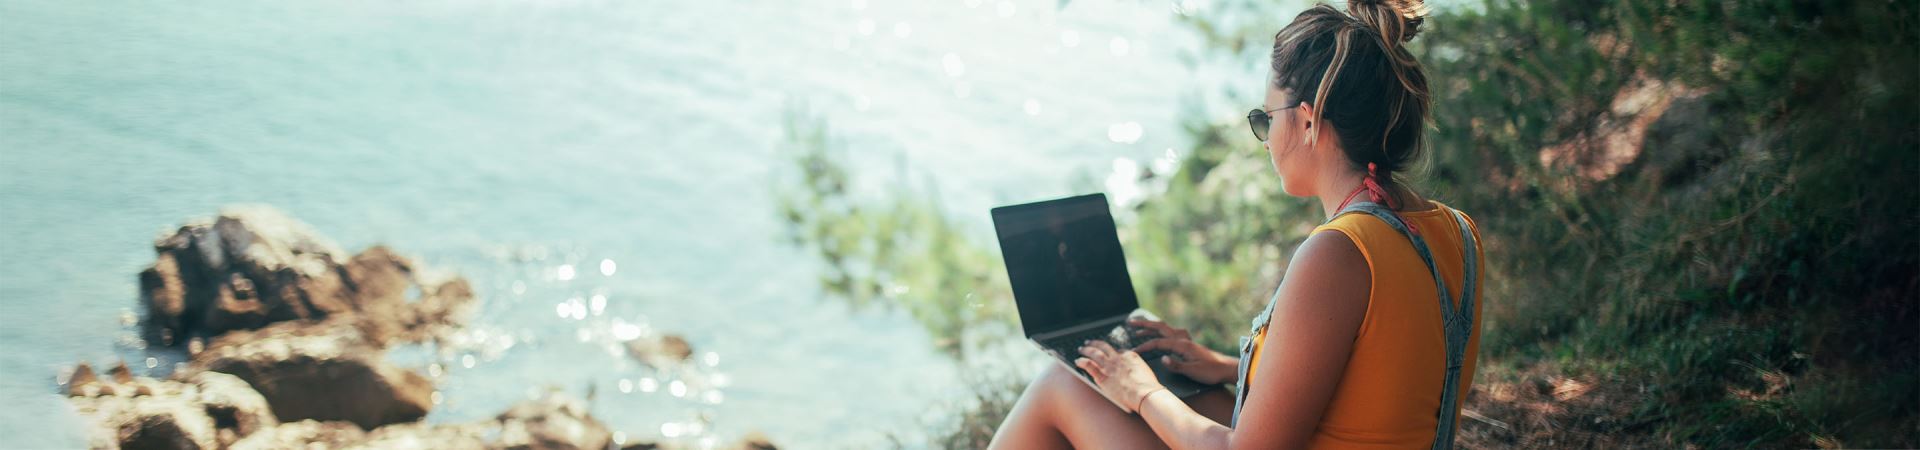 L’image montre une fille de profil, avec un ordinateur portable sur ses genoux. Elle porte un pull orange et une salopette en jean et est assise dans une zone boisée, surplombant la mer.